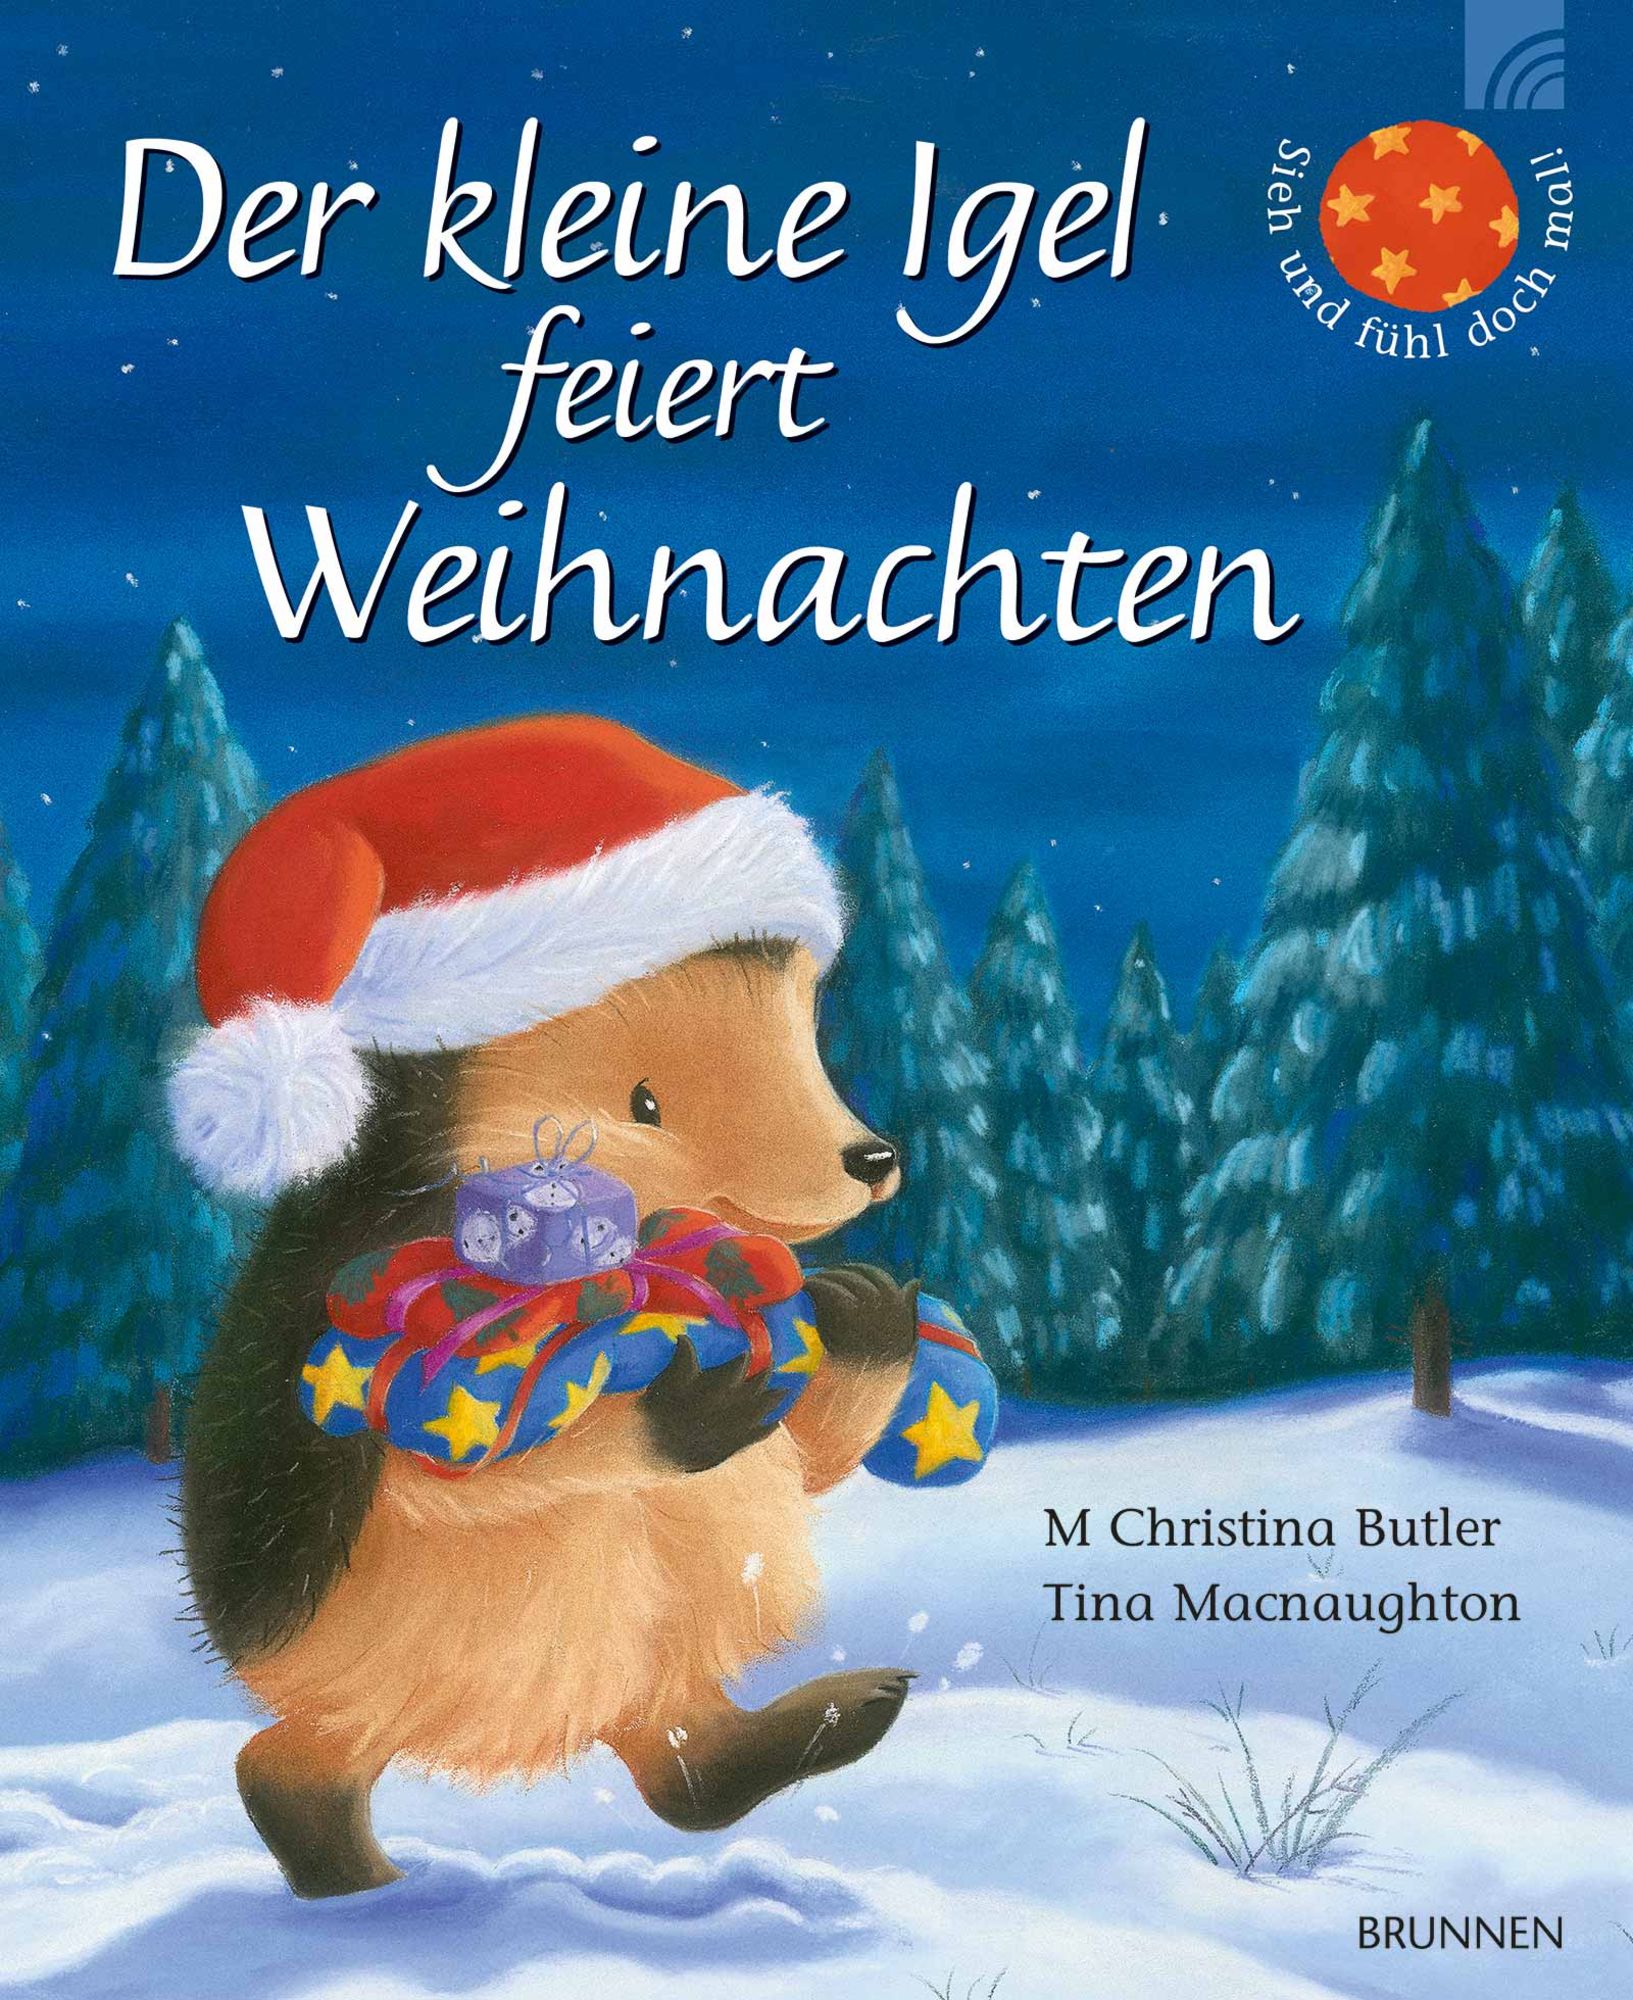 Der kleine Igel feiert Weihnachten' von 'M. Christina Butler' - Buch -  '978-3-7655-6899-2